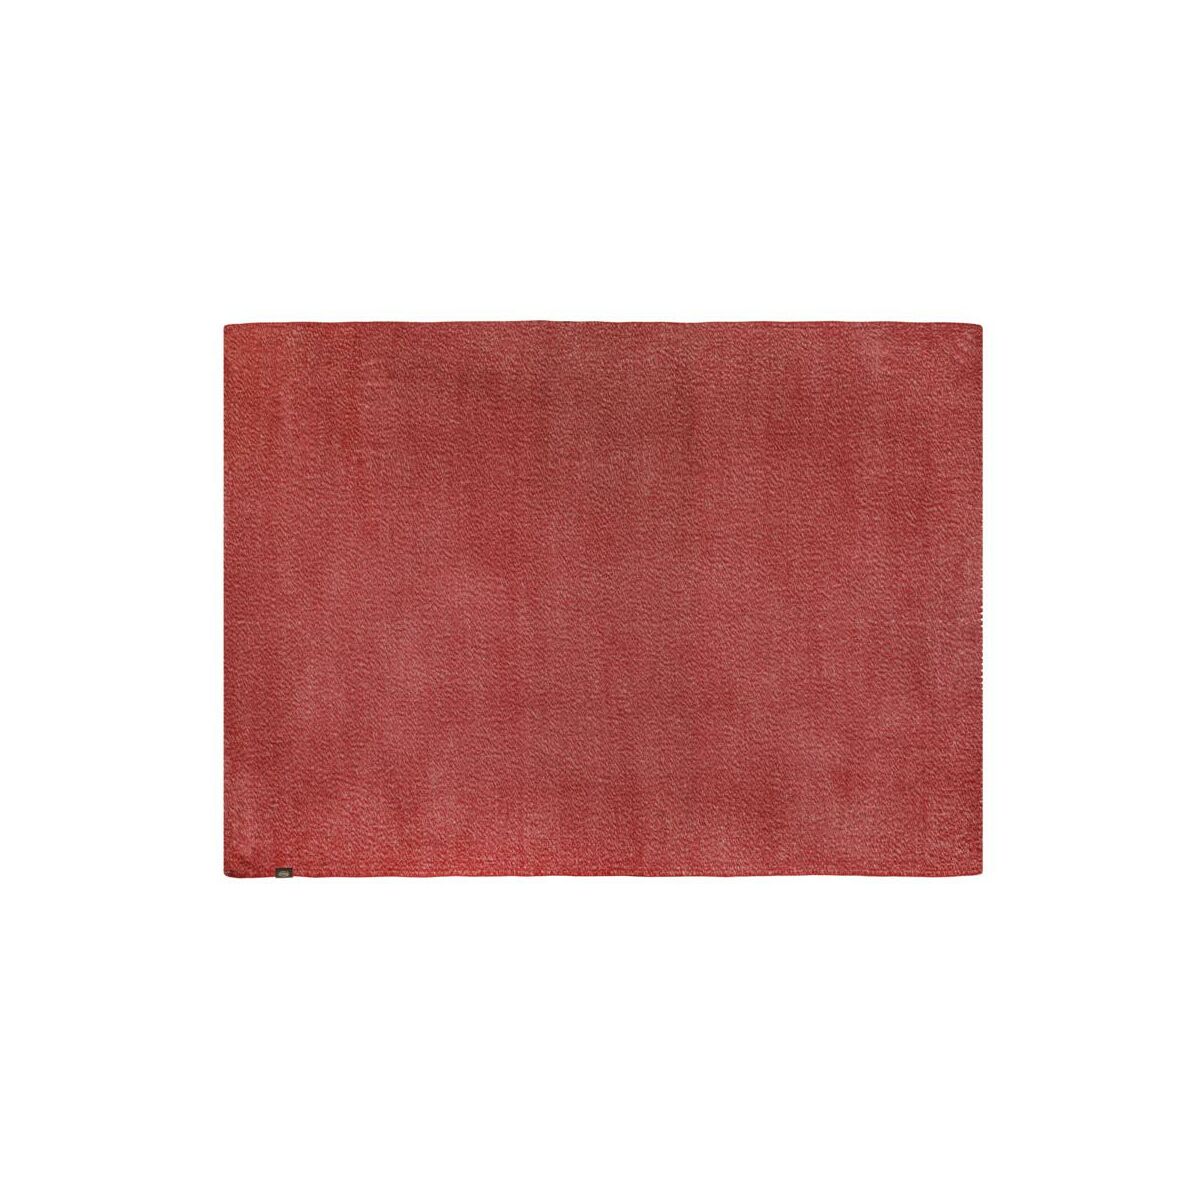 Narzuta Morocco czerwona 220 x 240 cm